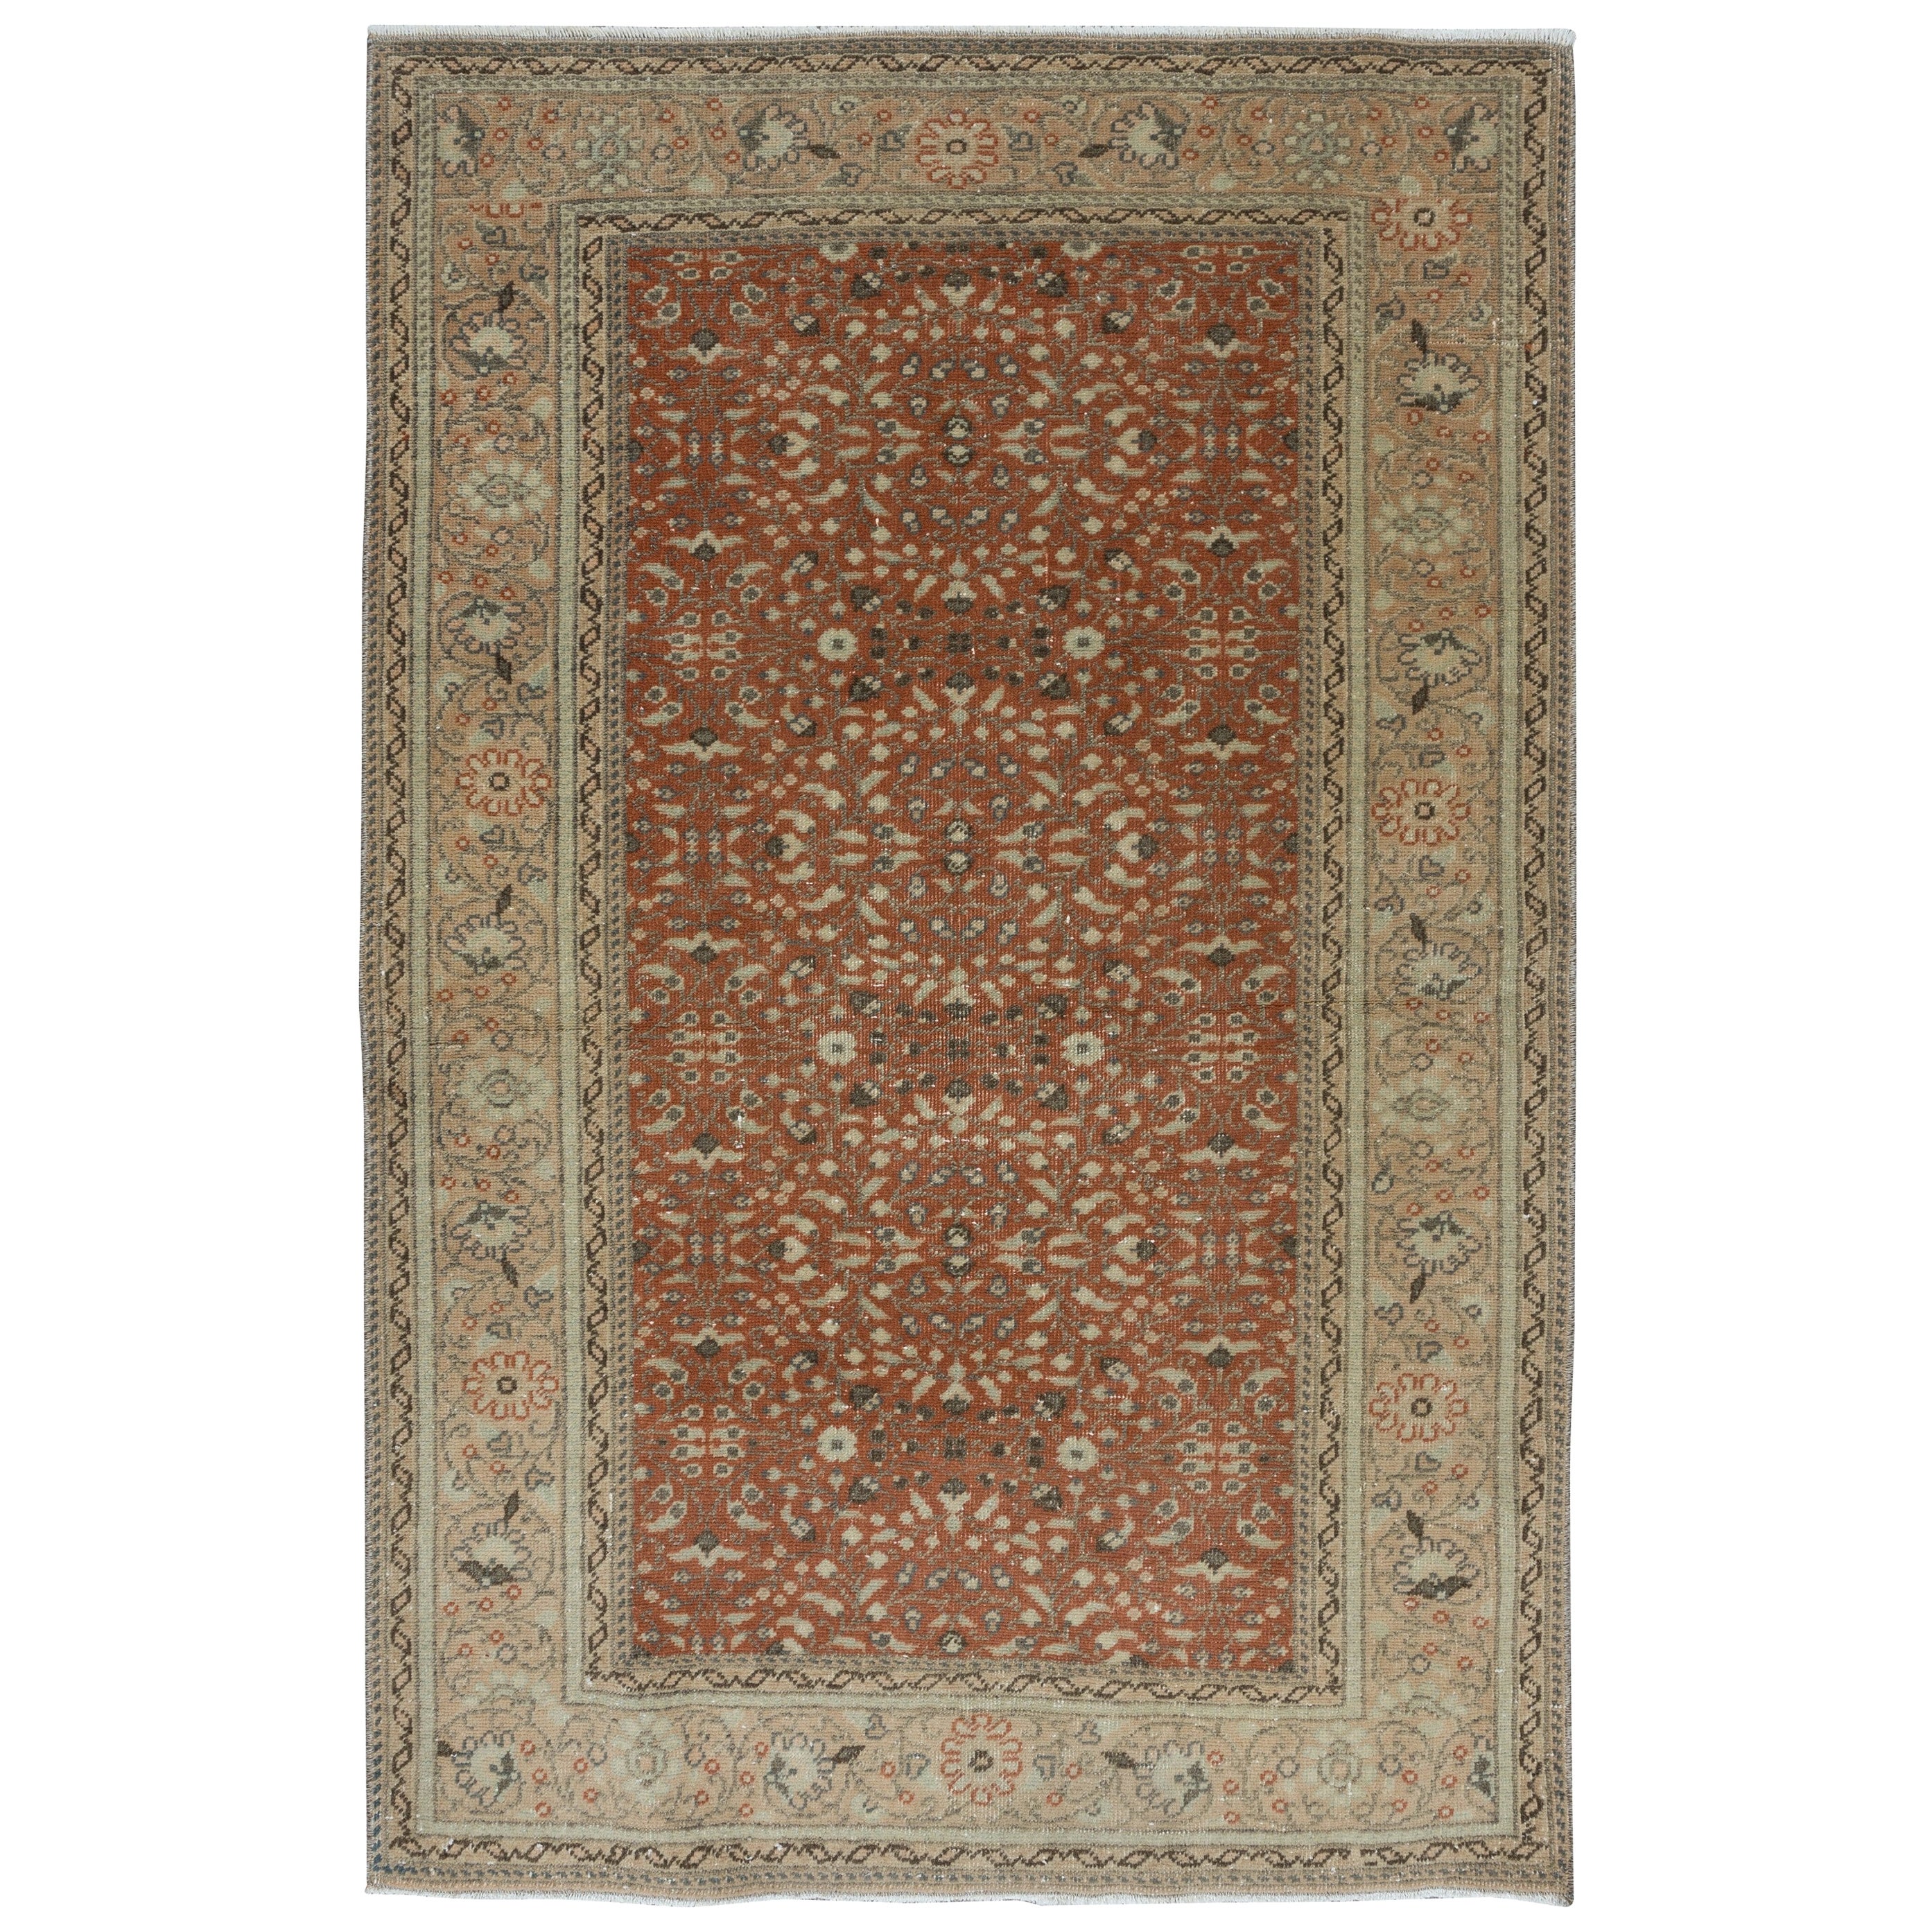 2.8x4.3 Ft Handgefertigter türkischer kleiner Teppich aus der Mitte des Jahrhunderts mit All-Over-Blumenmuster